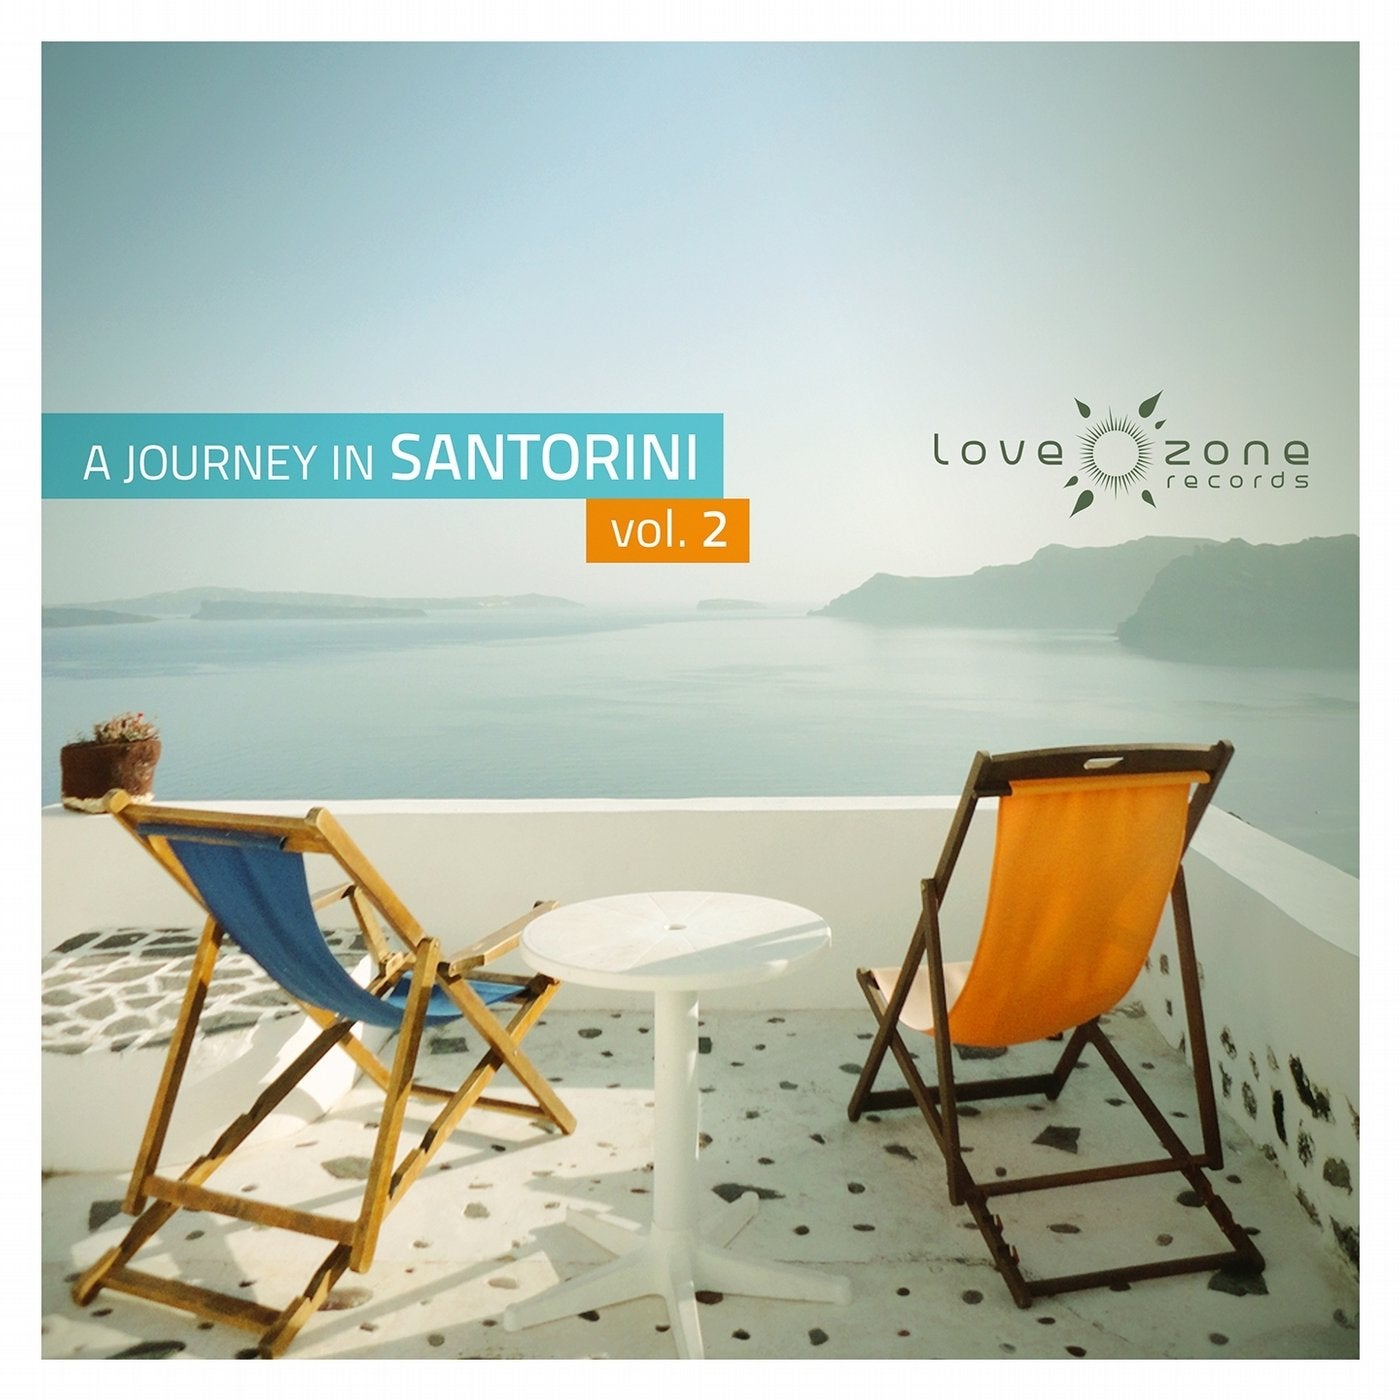 A Journey in Santorini, Vol. 2